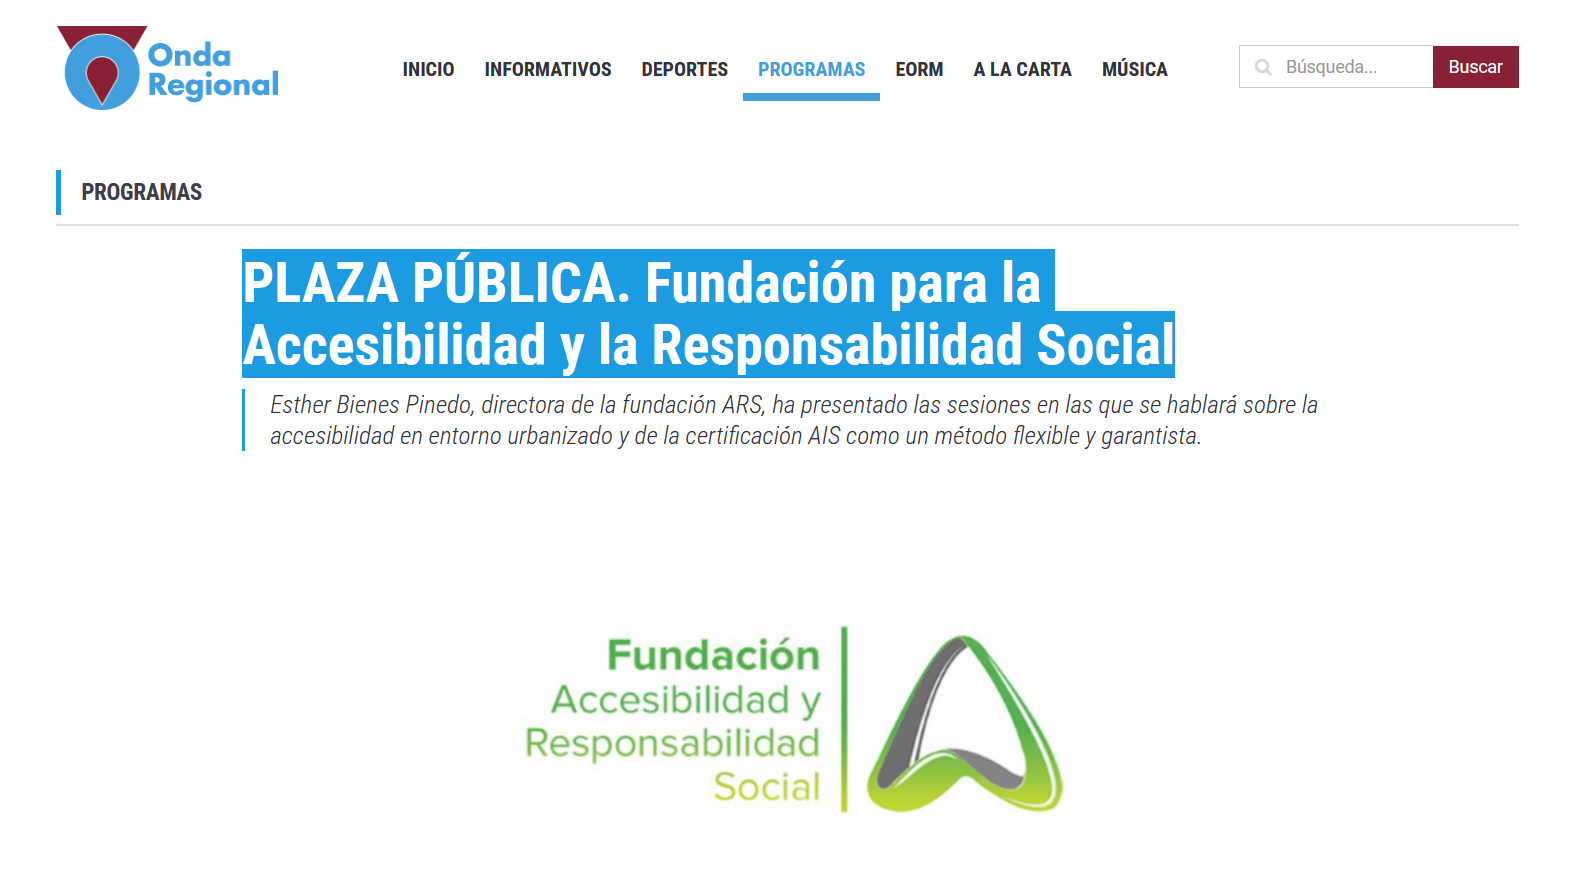 Captura d ela web de Onda Regional